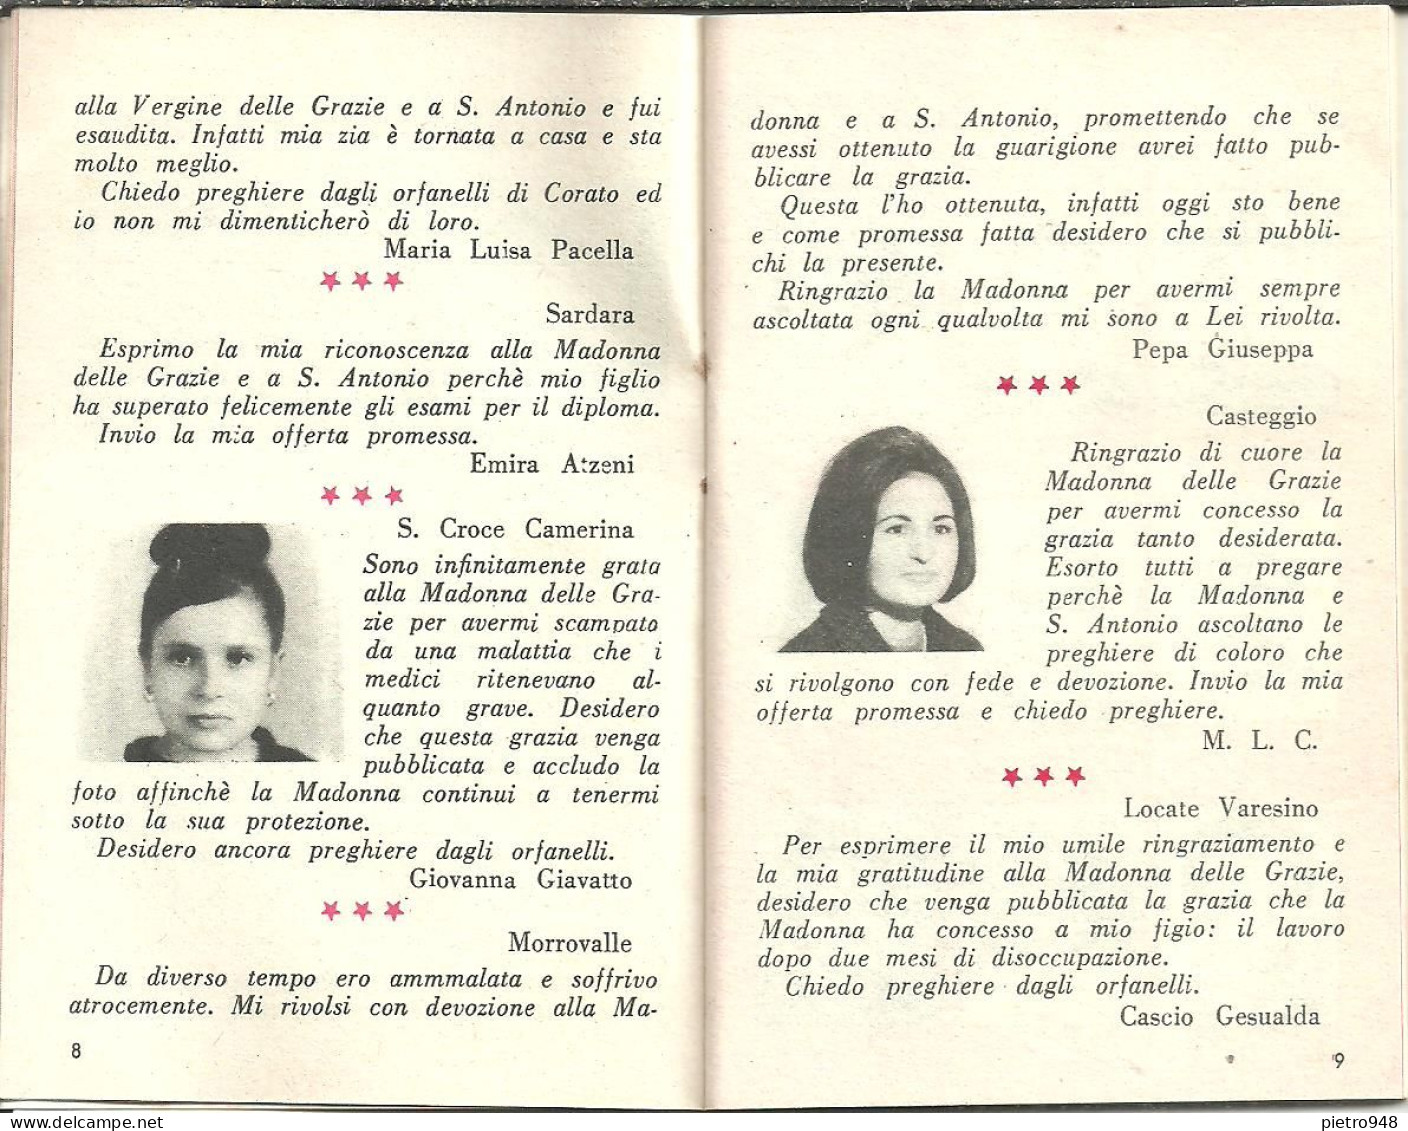 Libro (Libretto) Religioso "Opera Madonna Delle Grazie E Sant'Antonio" Corato (Bari), Agendina 1966 - Religion/ Spirituality